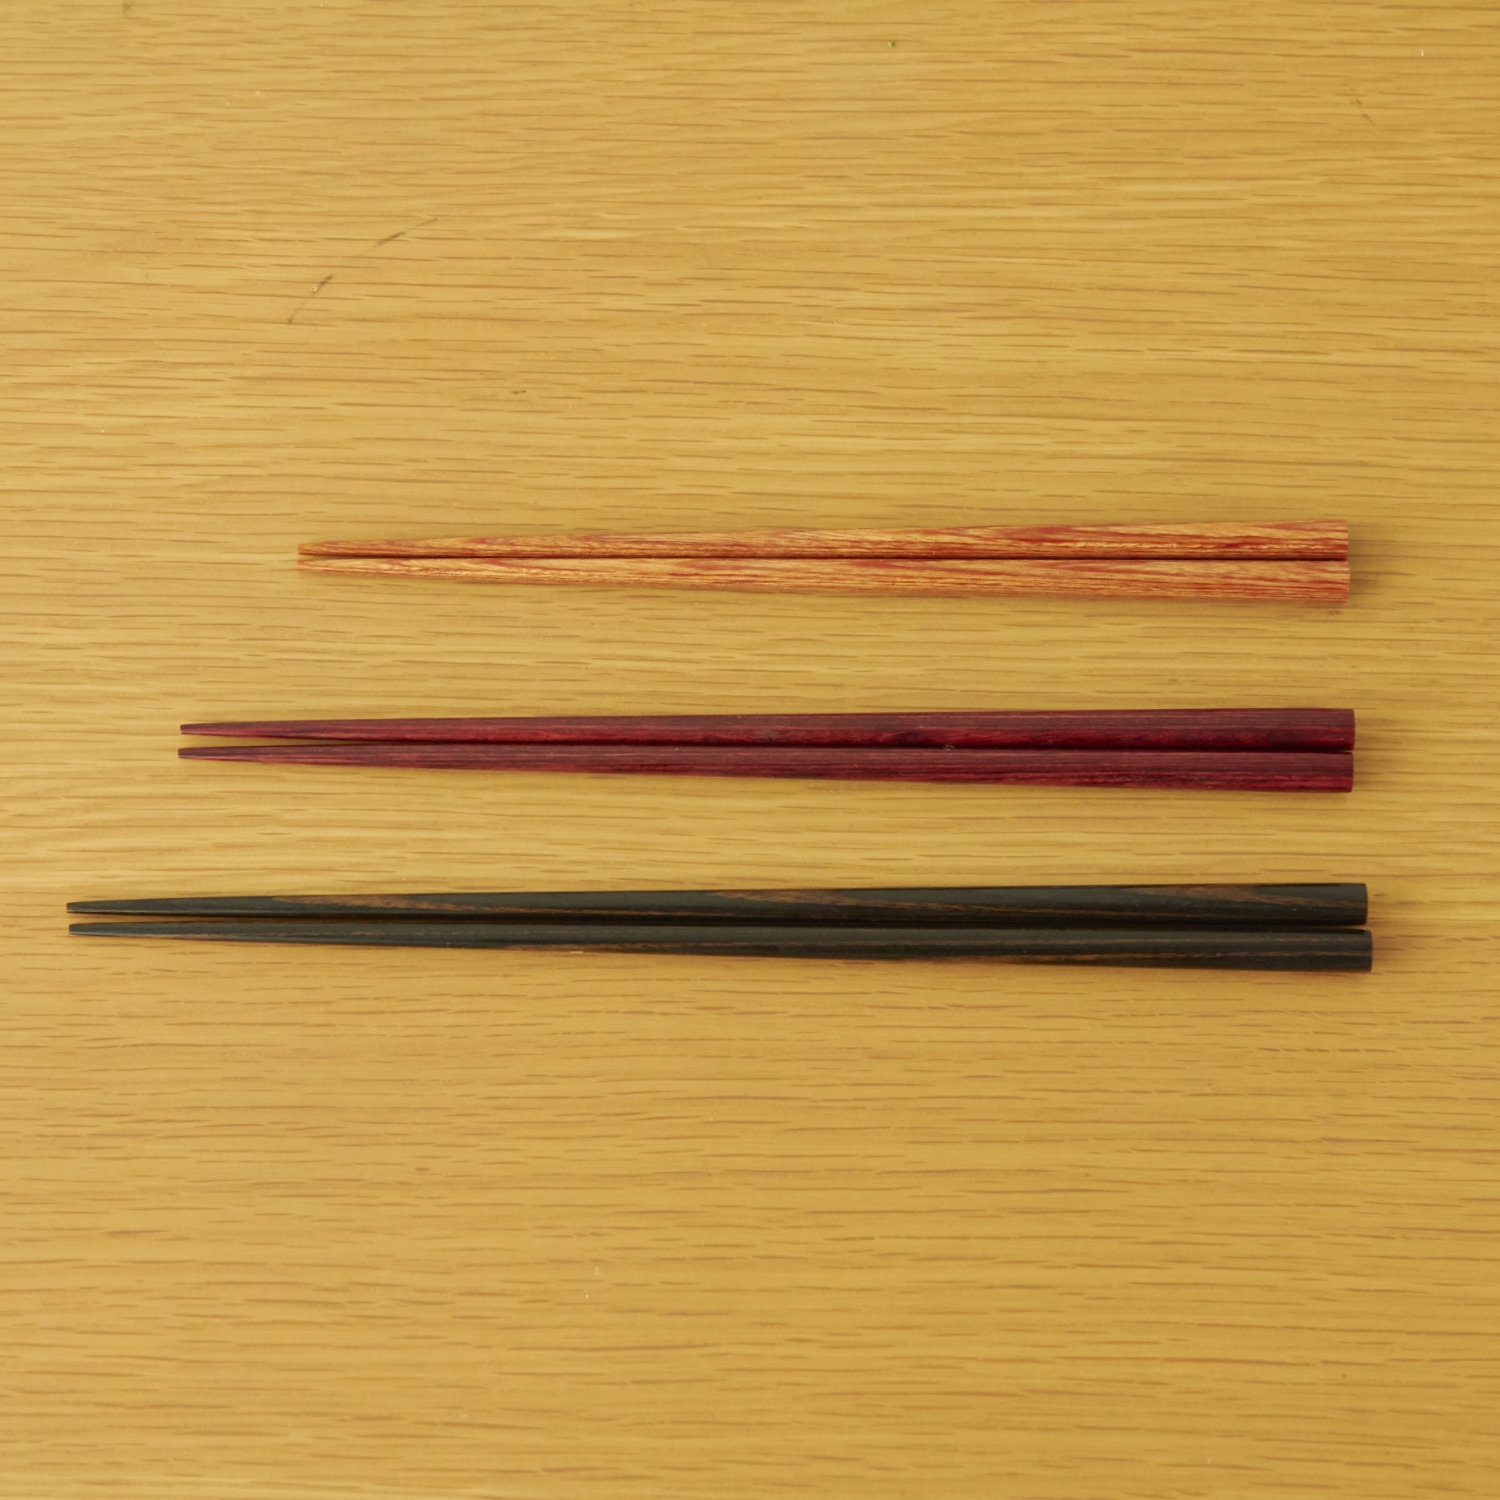 New Chopsticks Standard